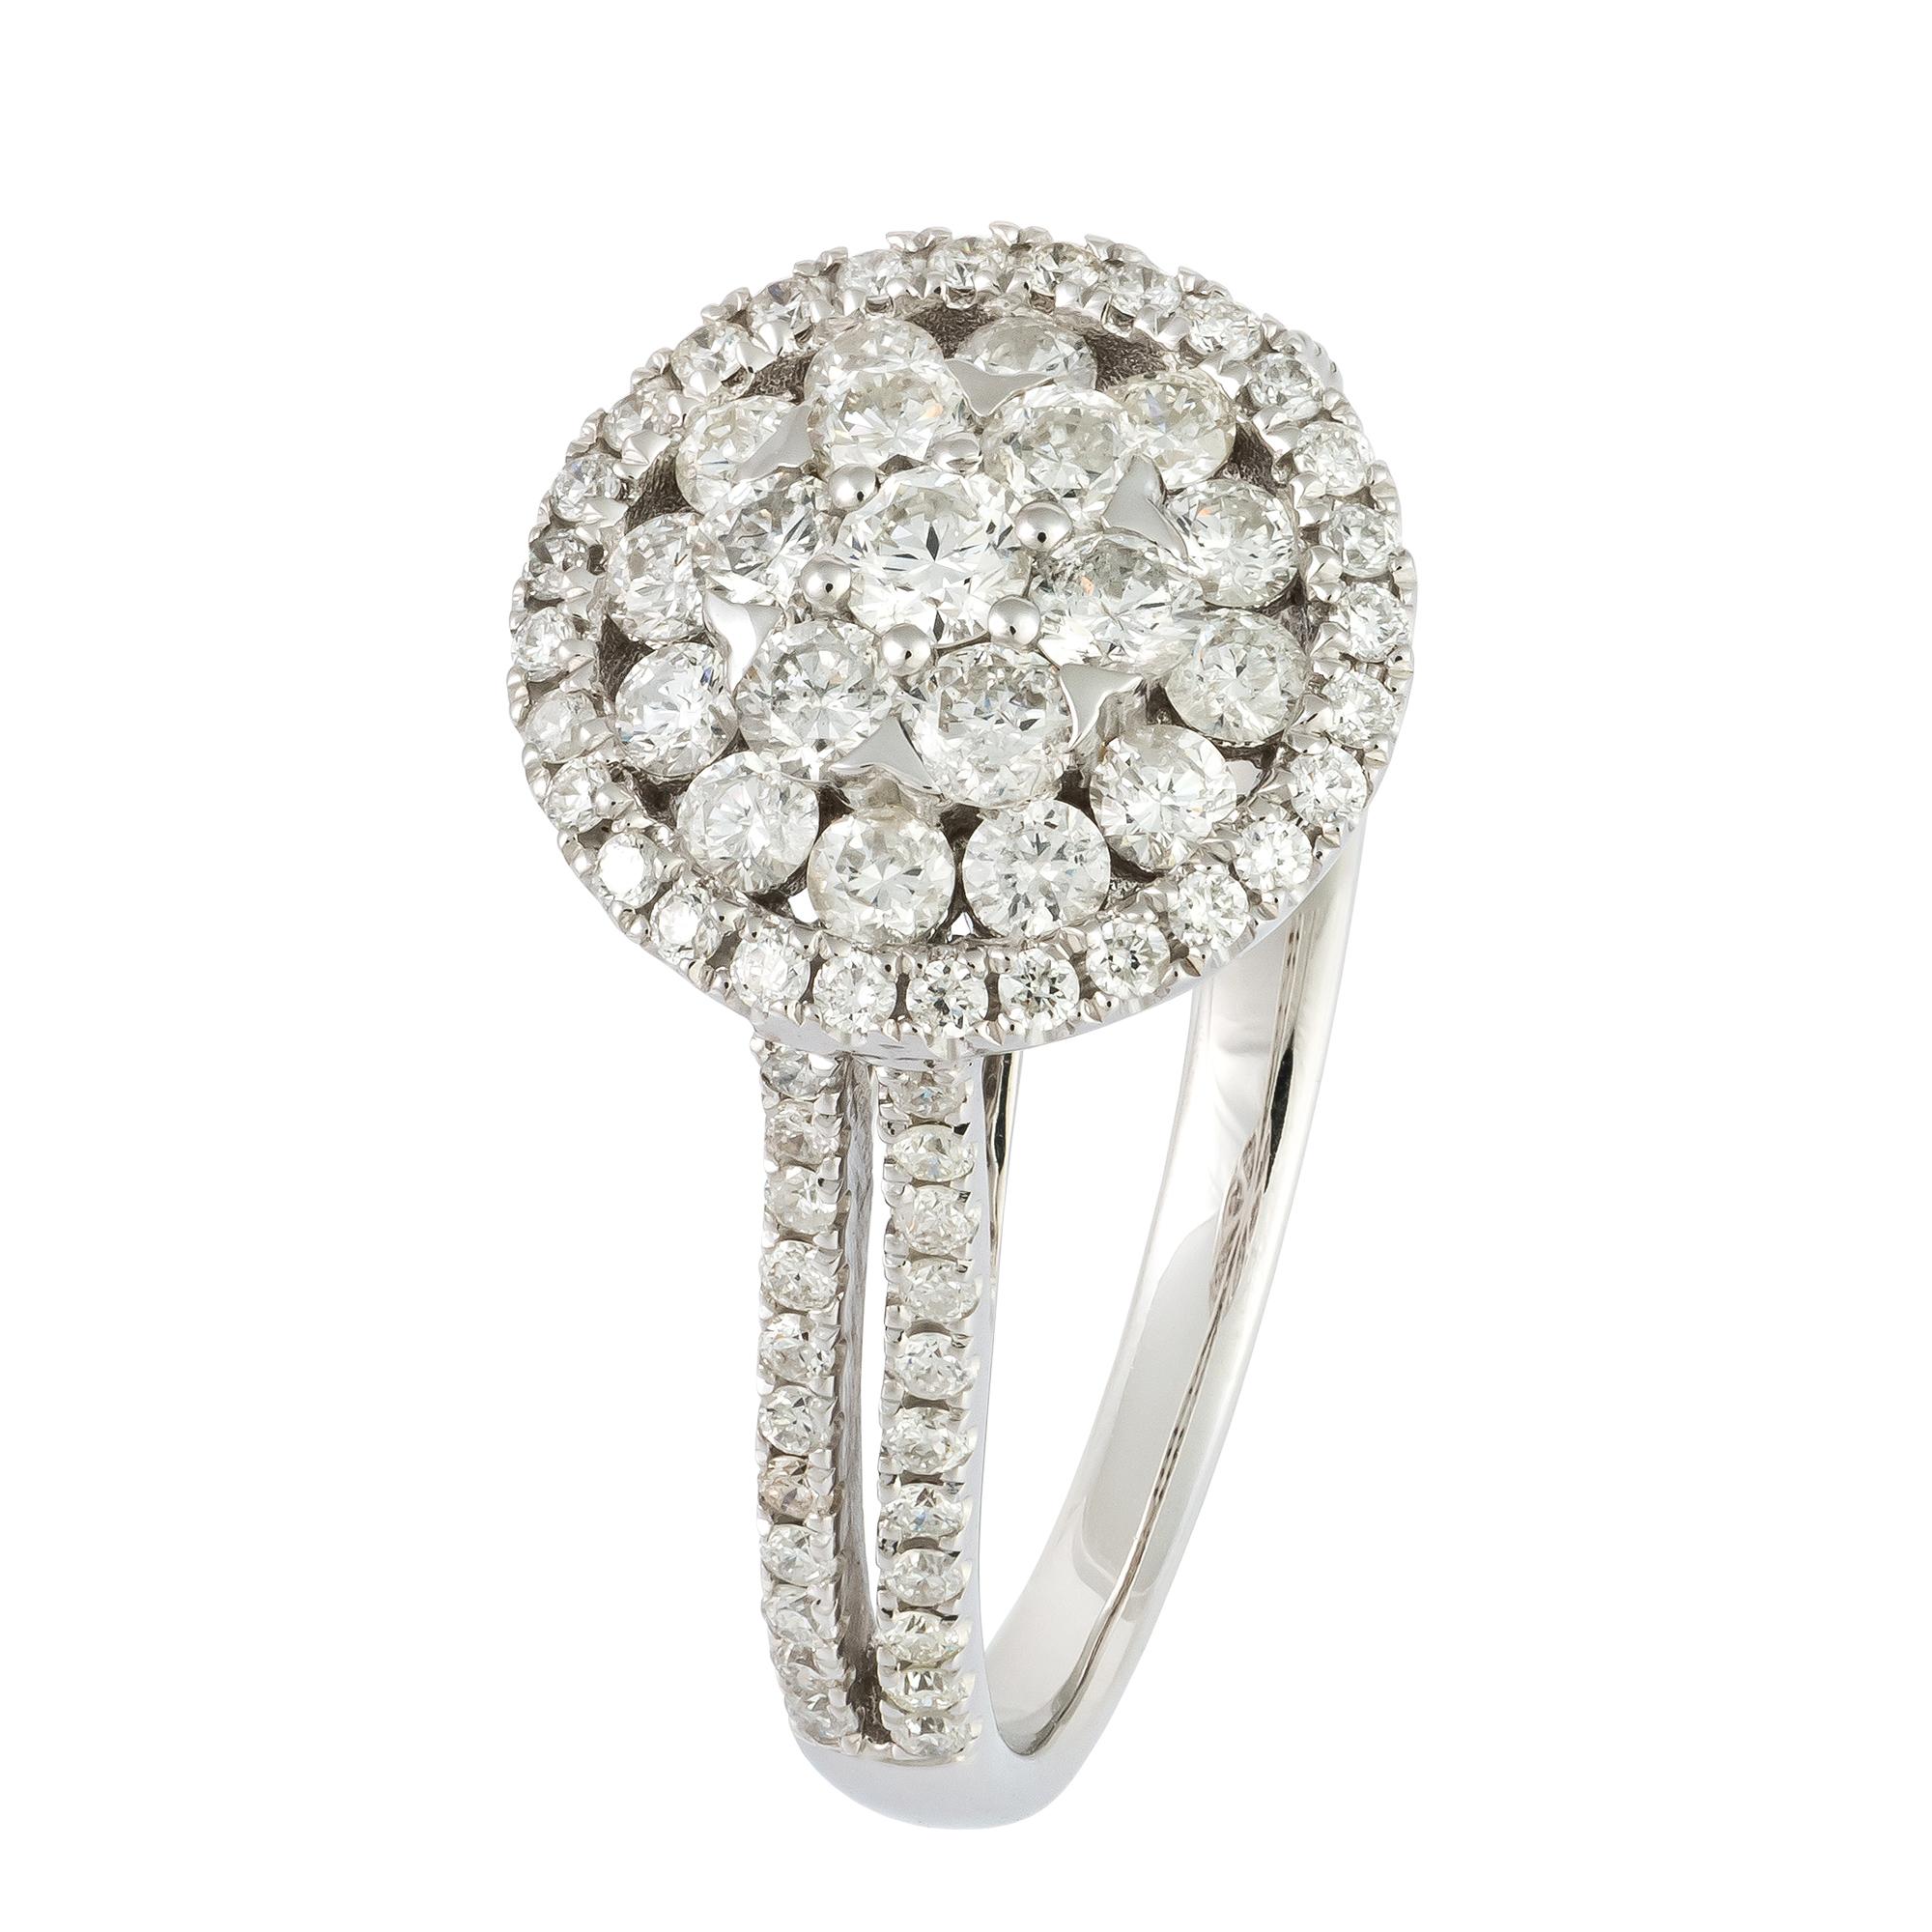 For Sale:  Impressive White 18K Gold White Diamond Ring for Her 2